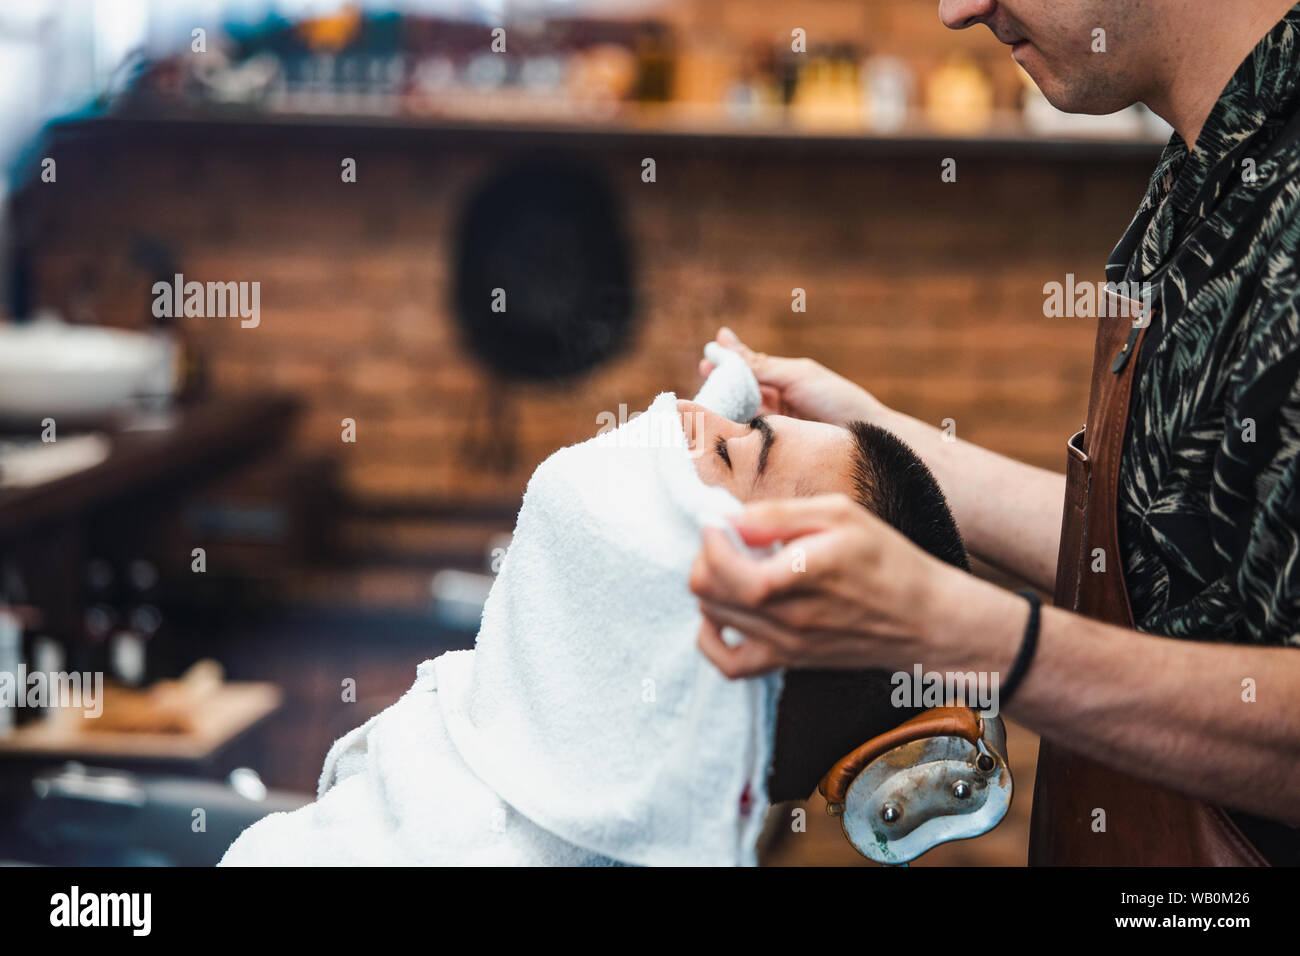 Friseur deckt das Gesicht eines Mannes mit einem warmen Handtuch. Traditionelle Ritual der Rasur des Bartes heiße und kalte Kompressen in einem alten Stil Friseur. Cli Stockfoto